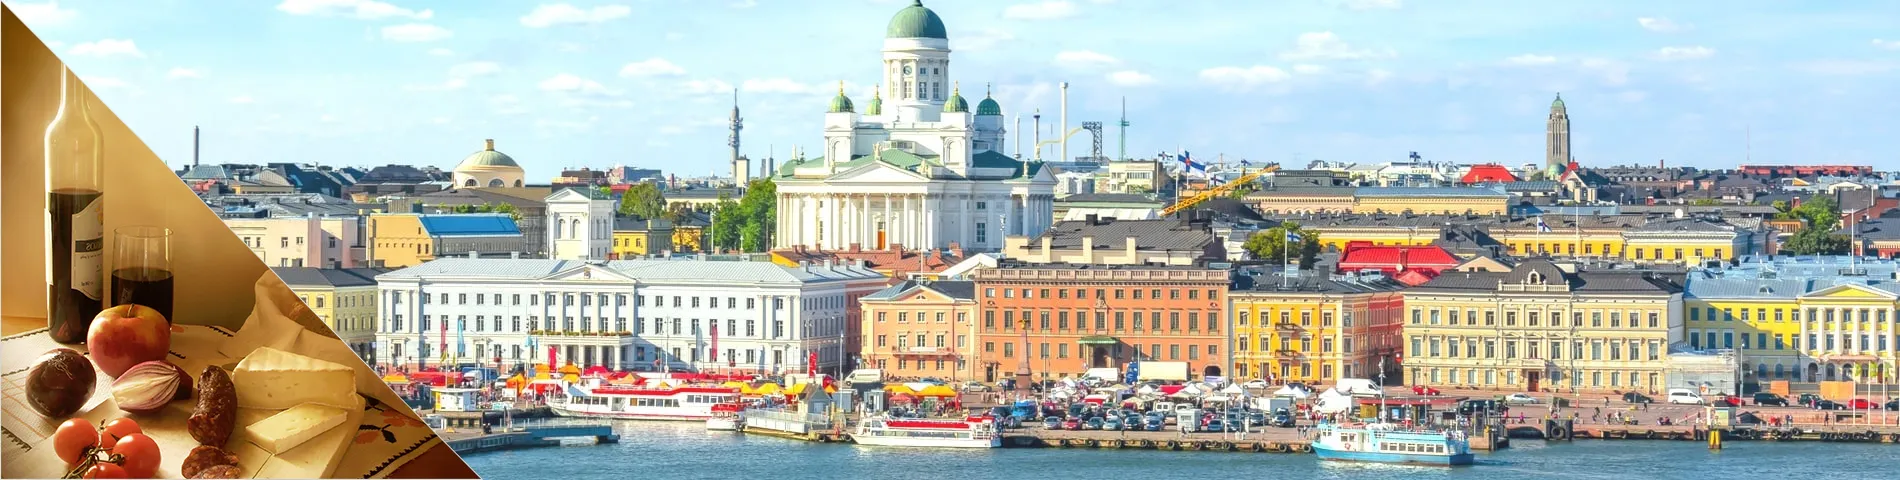 Helsinki - Finnish & Culture